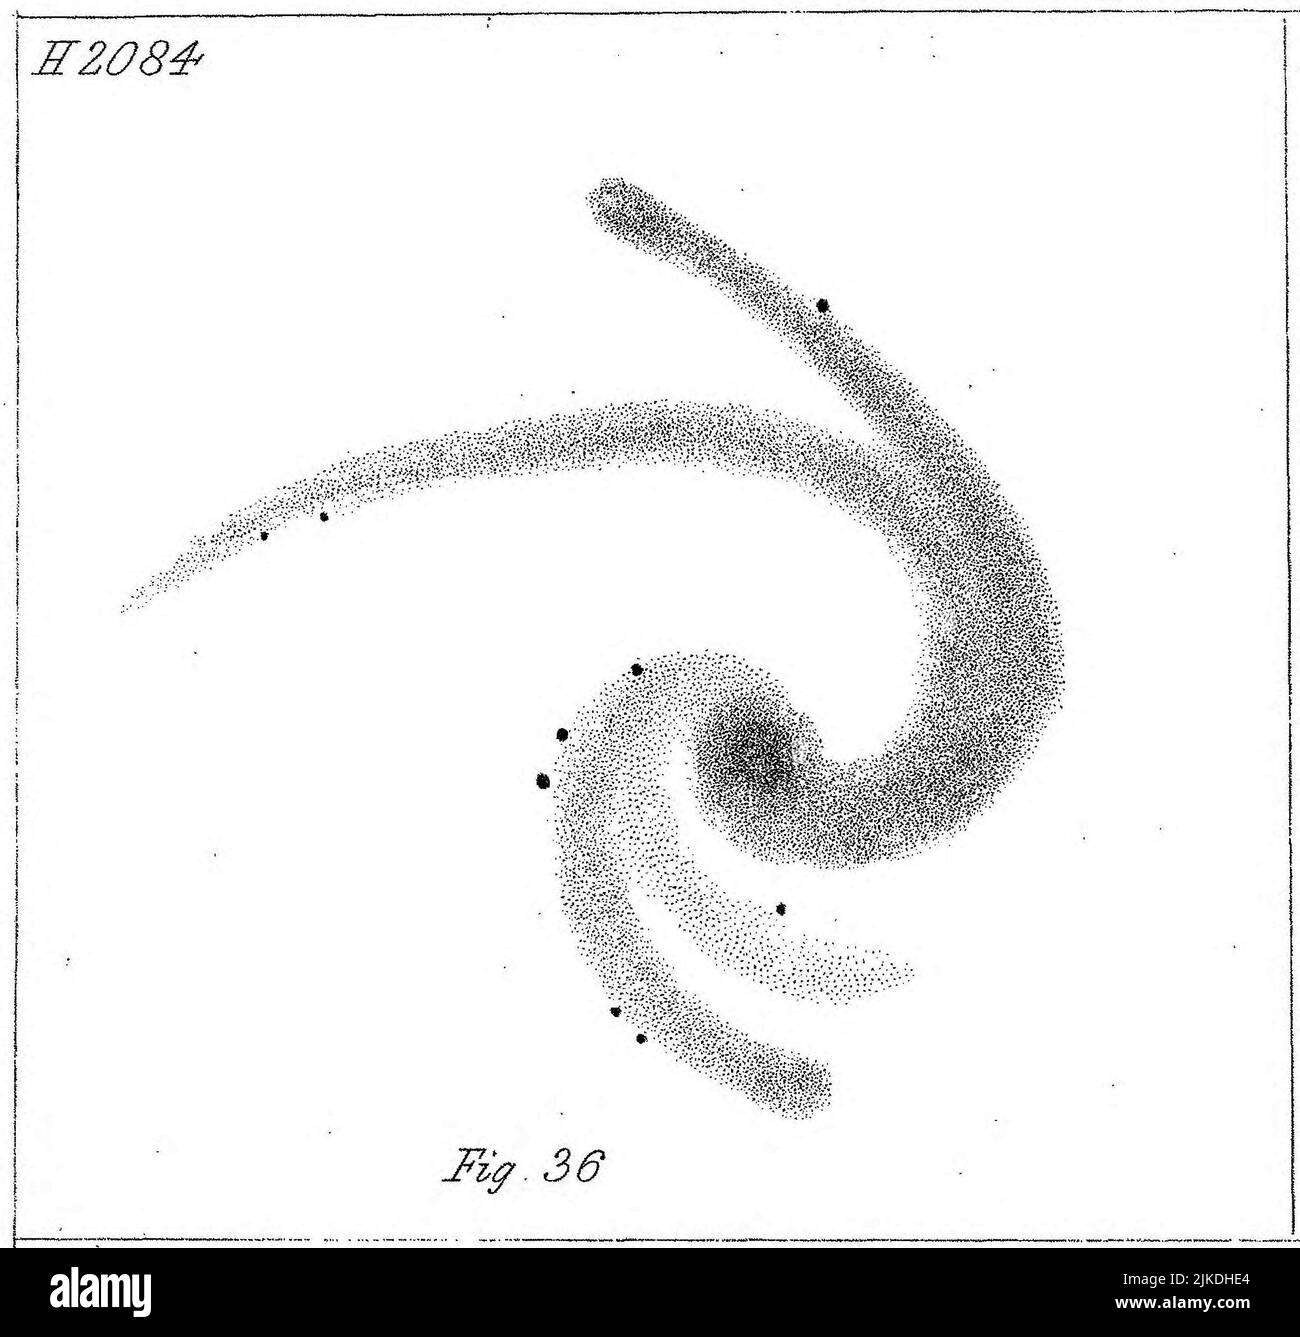 Illustration observation de la nébuleuse par Lord Rosse dans la publication de 1861. Herschel H2084, NGC6946. Banque D'Images